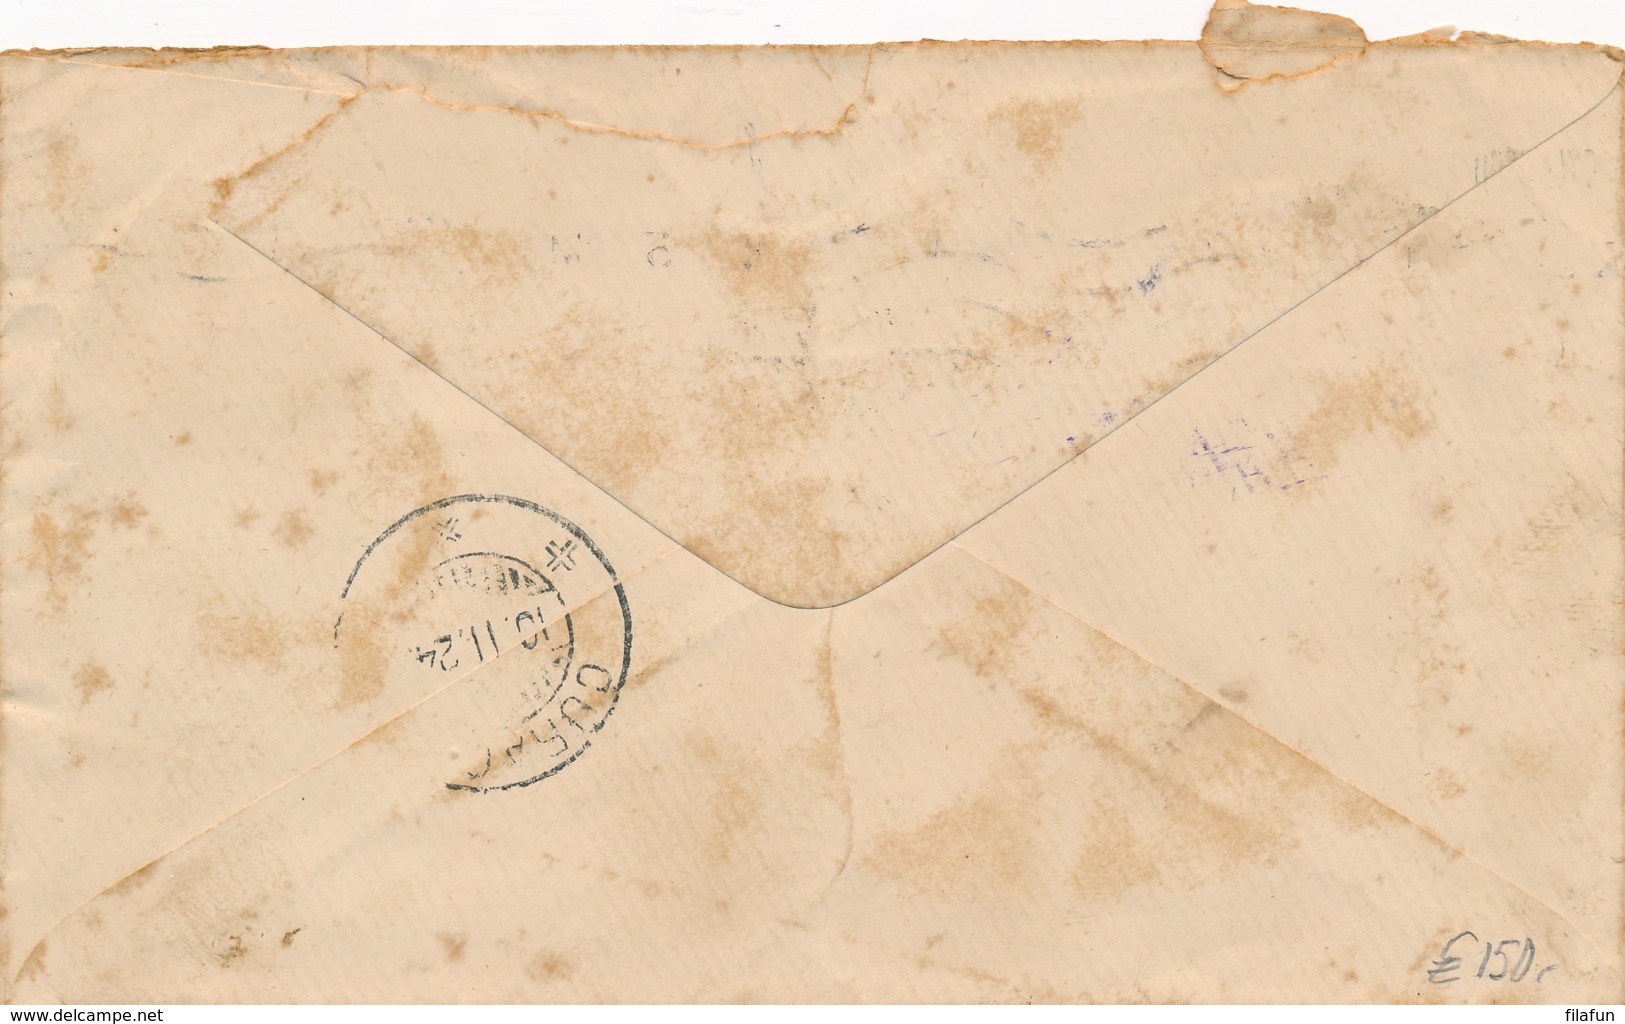 Curacao - 1924 - 2,5 & 15 Cent Port / Postage Due Op Inkomende Brief Van London / UK Naar Curacao - Niederländische Antillen, Curaçao, Aruba